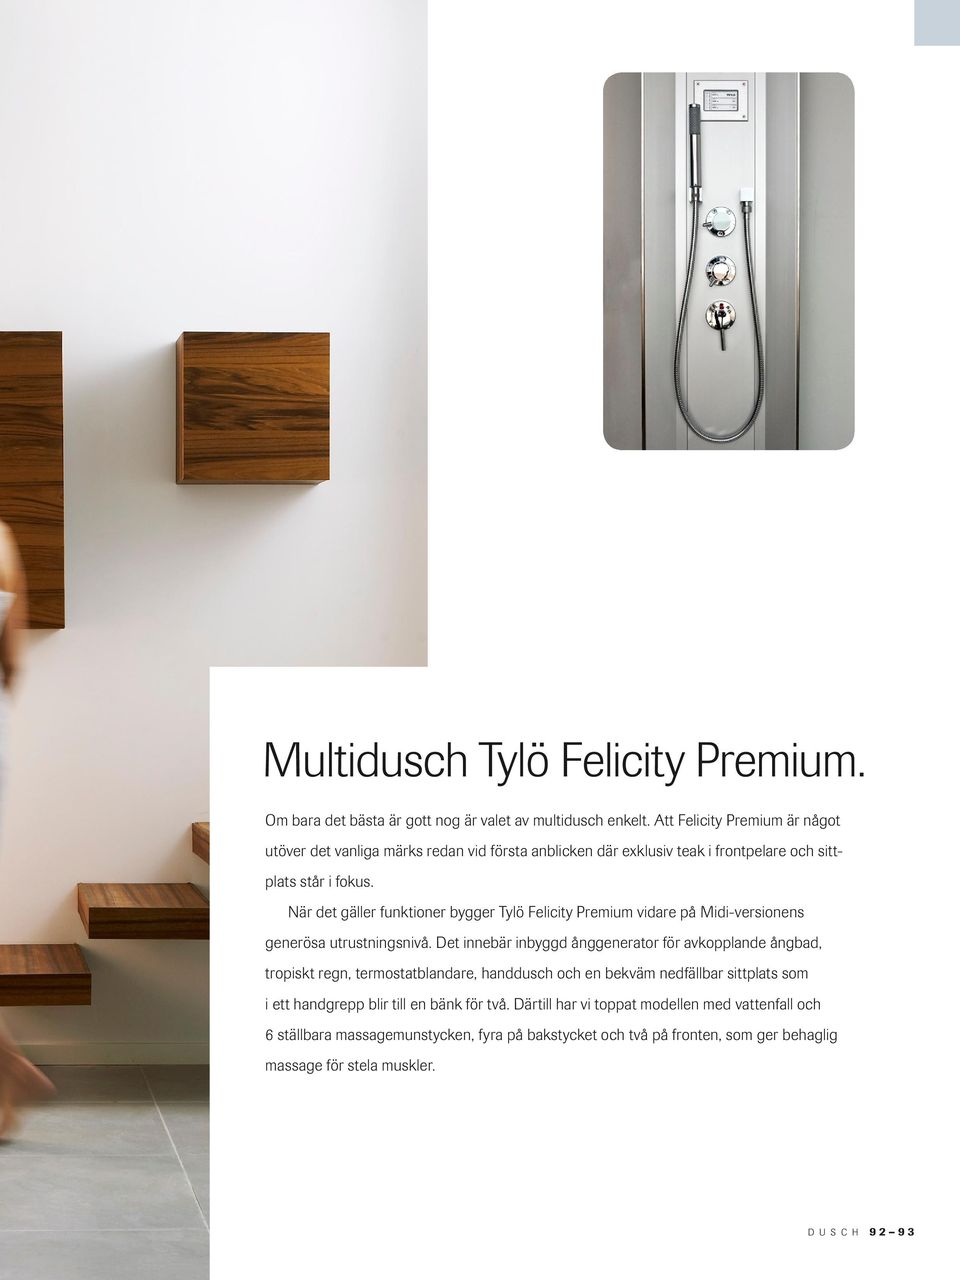 När det gäller funktioner bygger Tylö Felicity Premium vidare på Midi-versionens generösa utrustningsnivå.